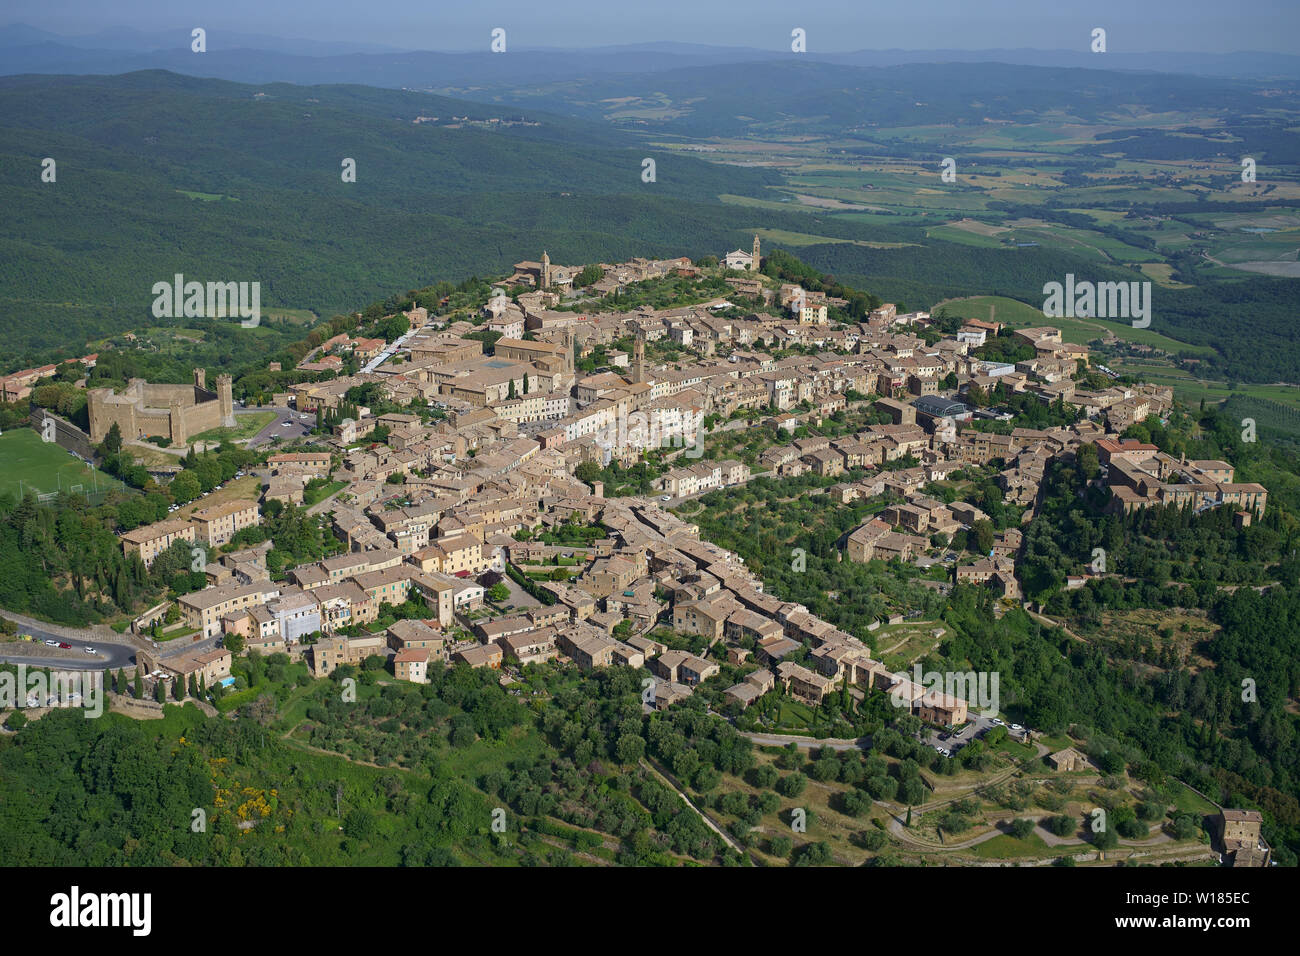 VUE AÉRIENNE. Ville médiévale au sommet d'une colline dominant les terres agricoles de Val d'Orcia. Montalcino, province de Sienne, Toscane, Italie. Banque D'Images